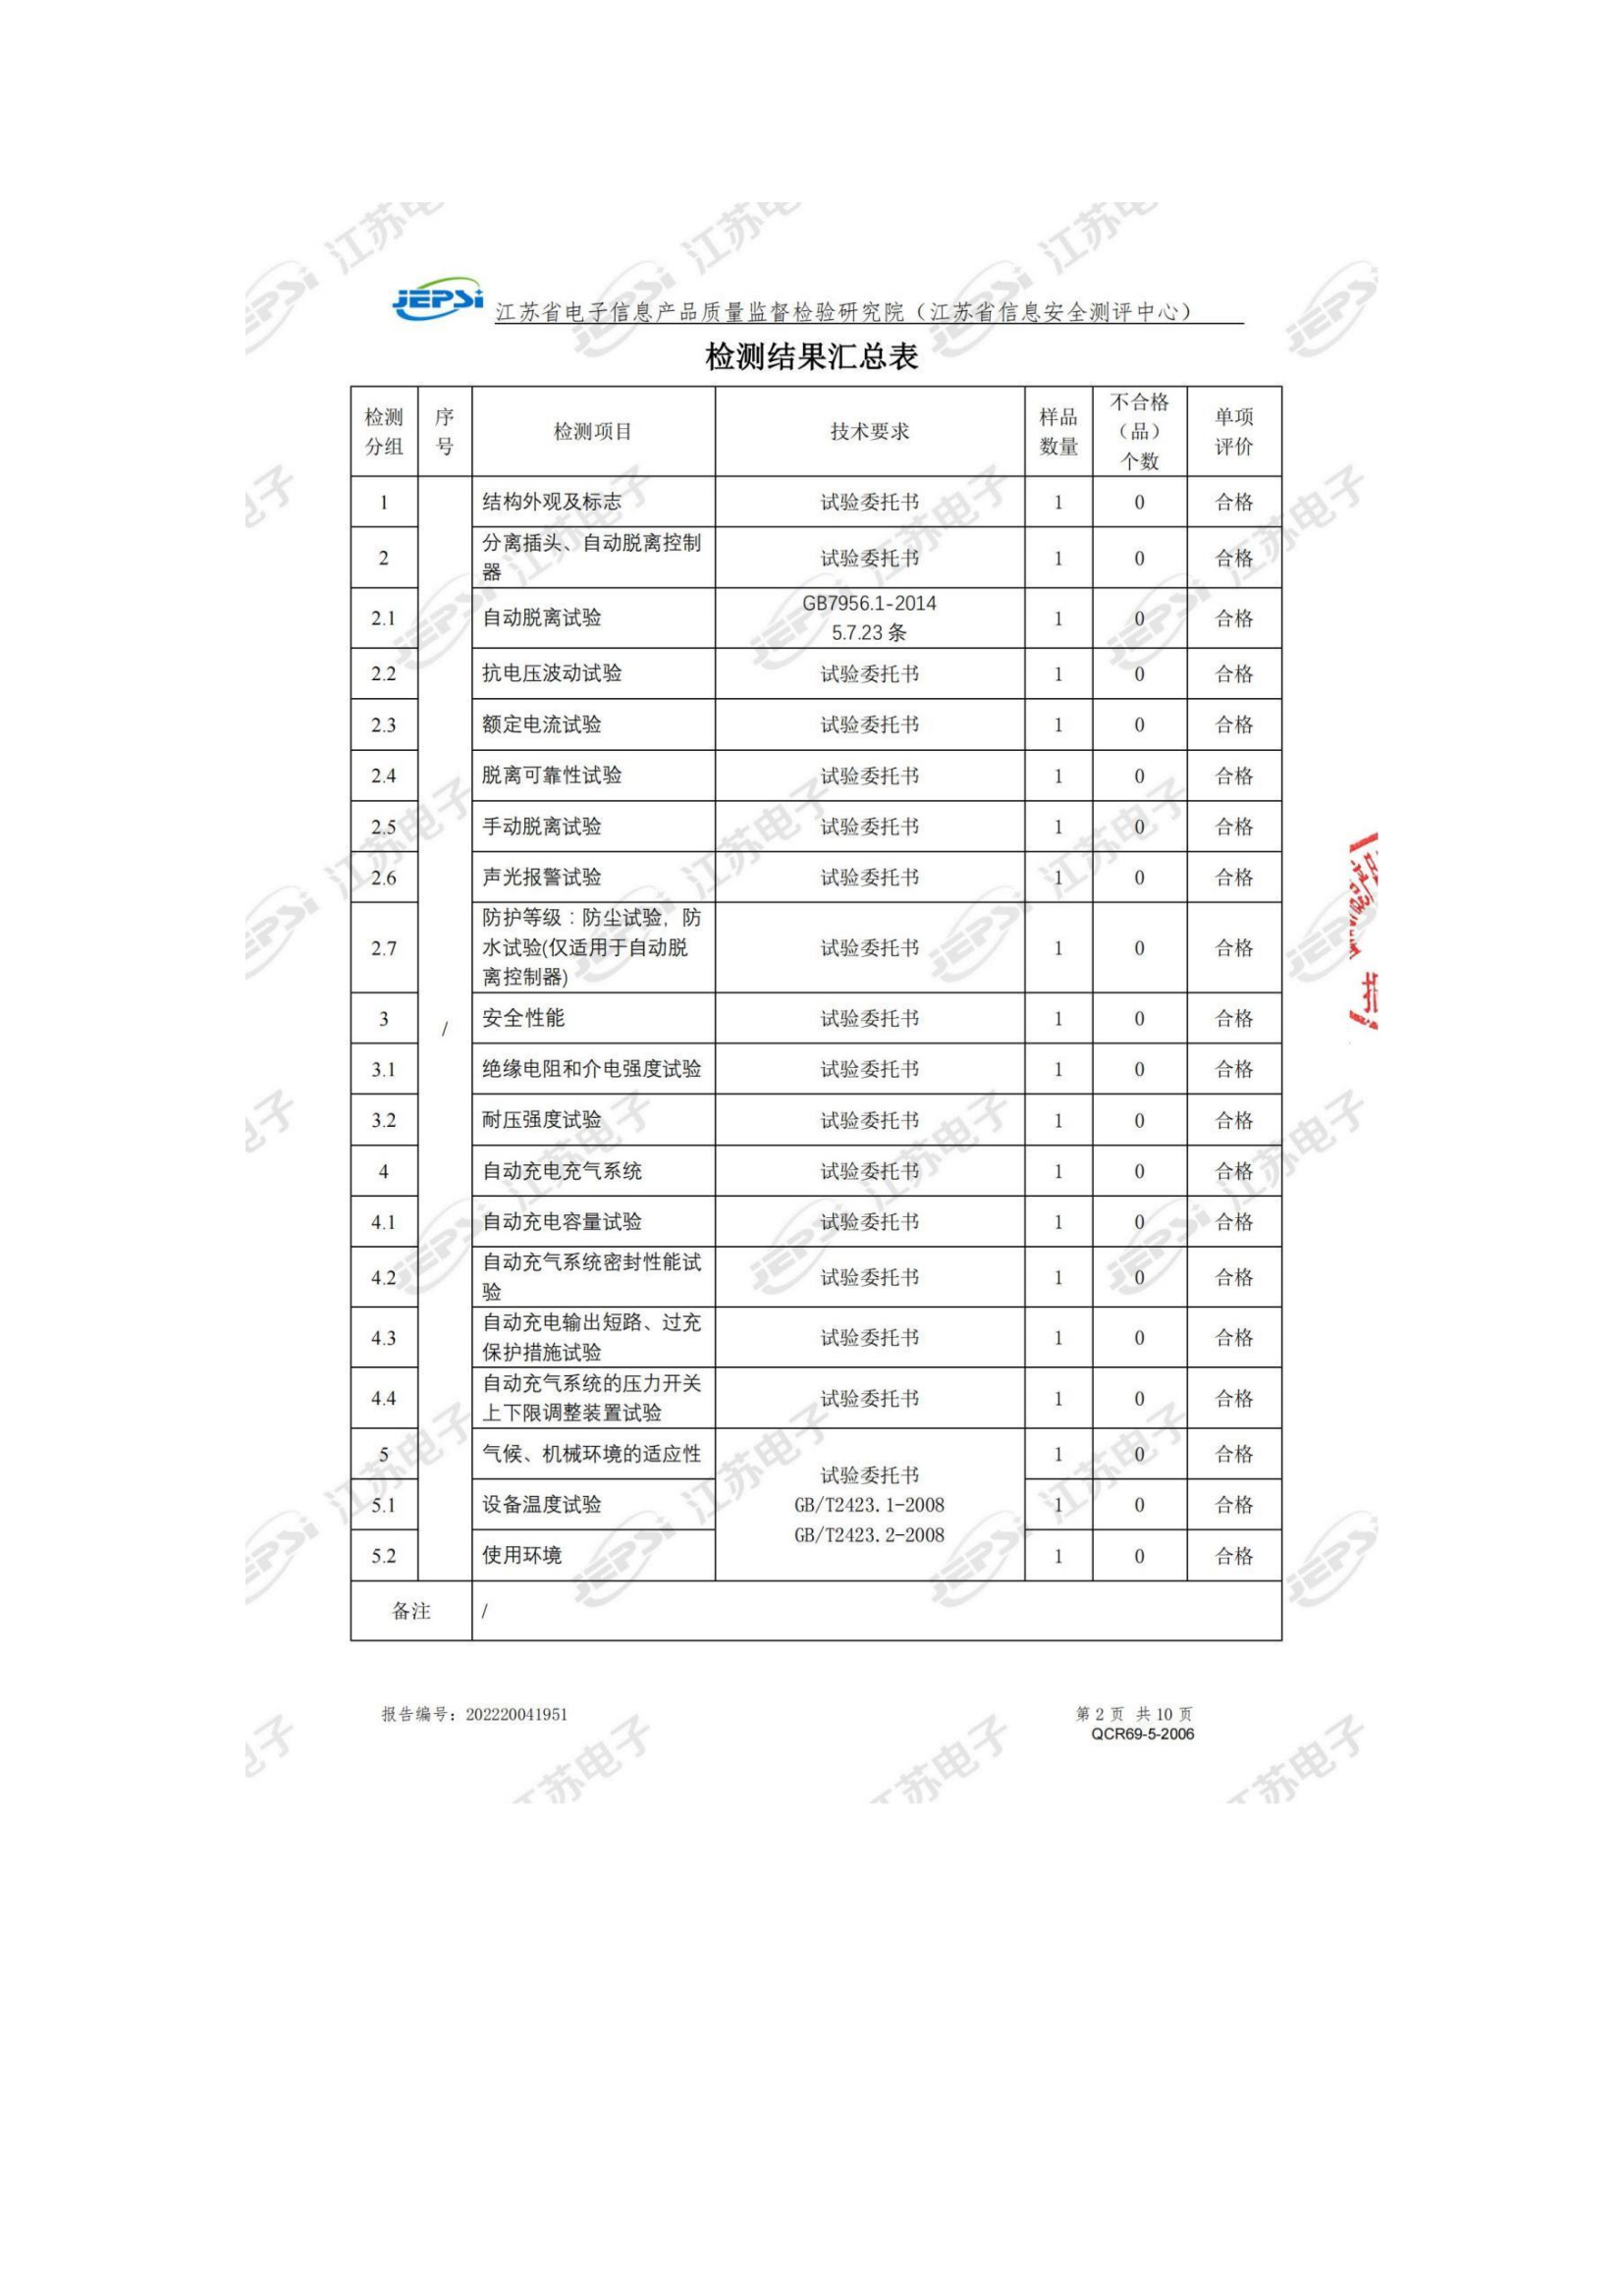 第二批次 宿营车 24人技术规格书 汕德 卡(金广)_57.png